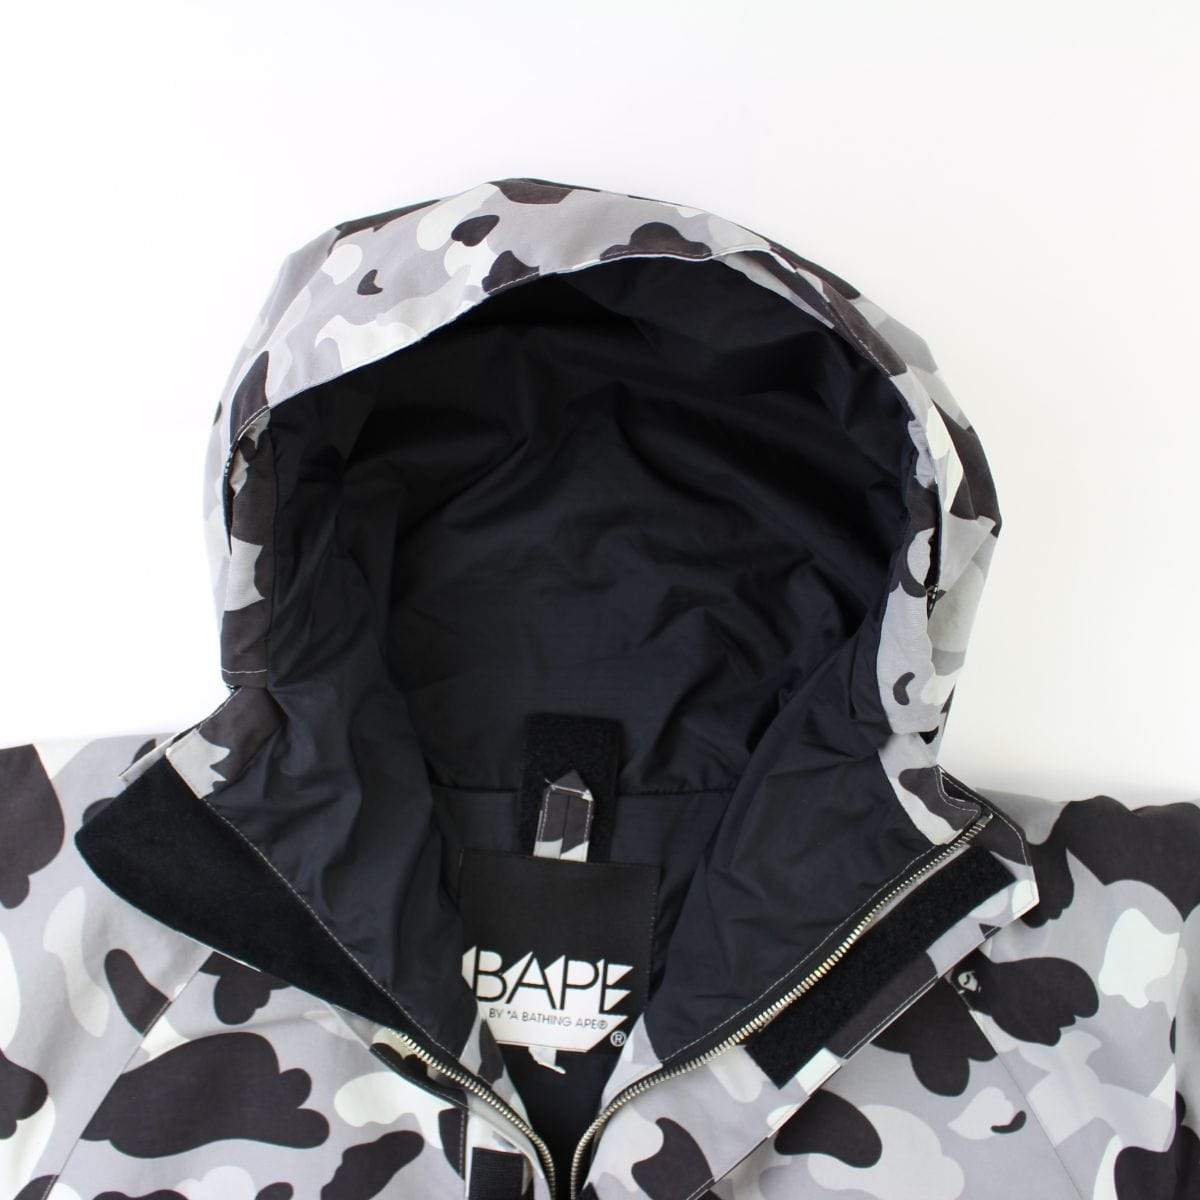 Bape Grey Camo Snowboard Jacket - SaruGeneral